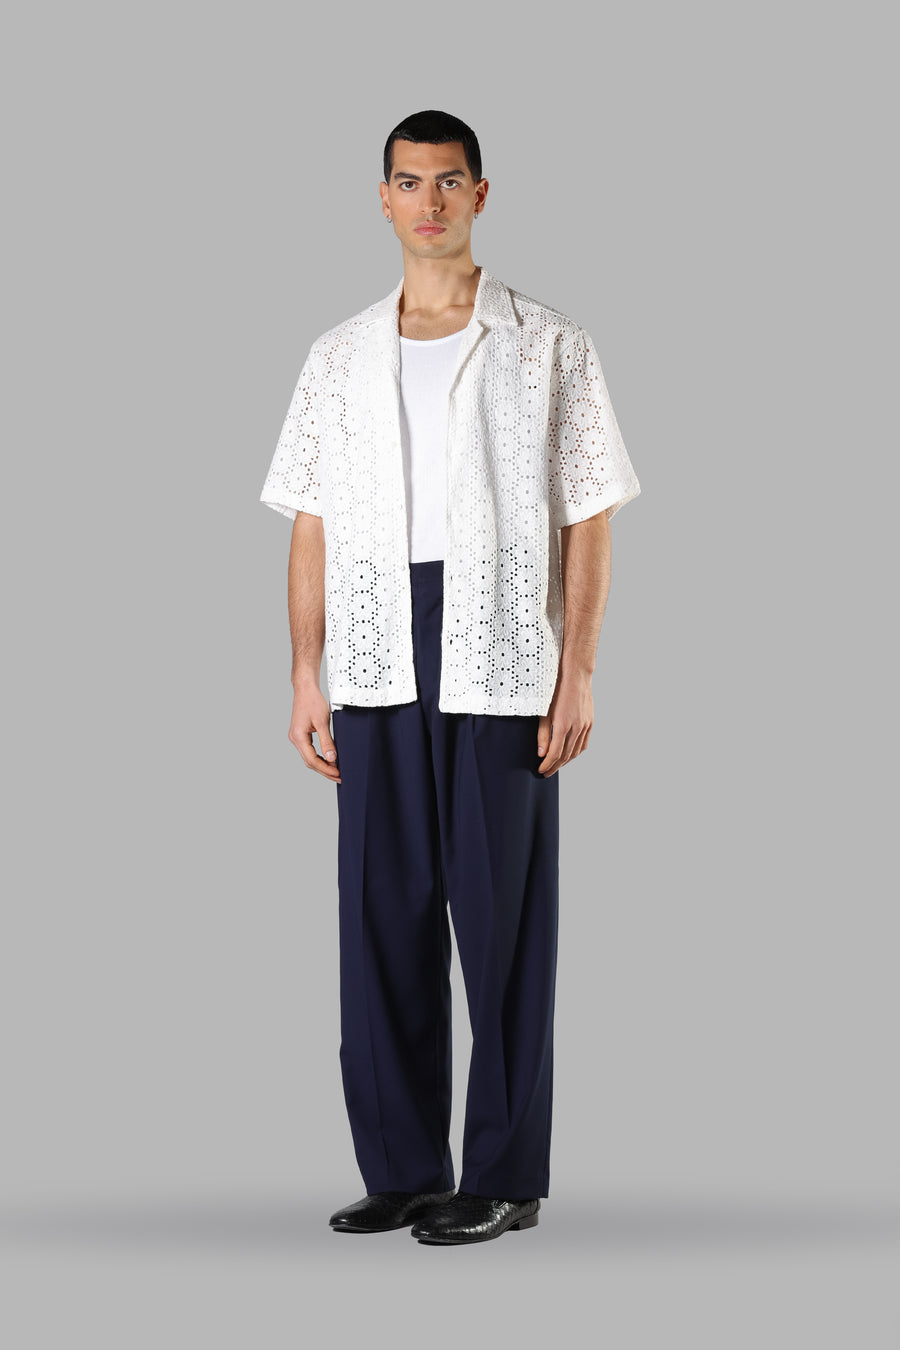 Camicia crochet in cotone traforata floreale - Bianco